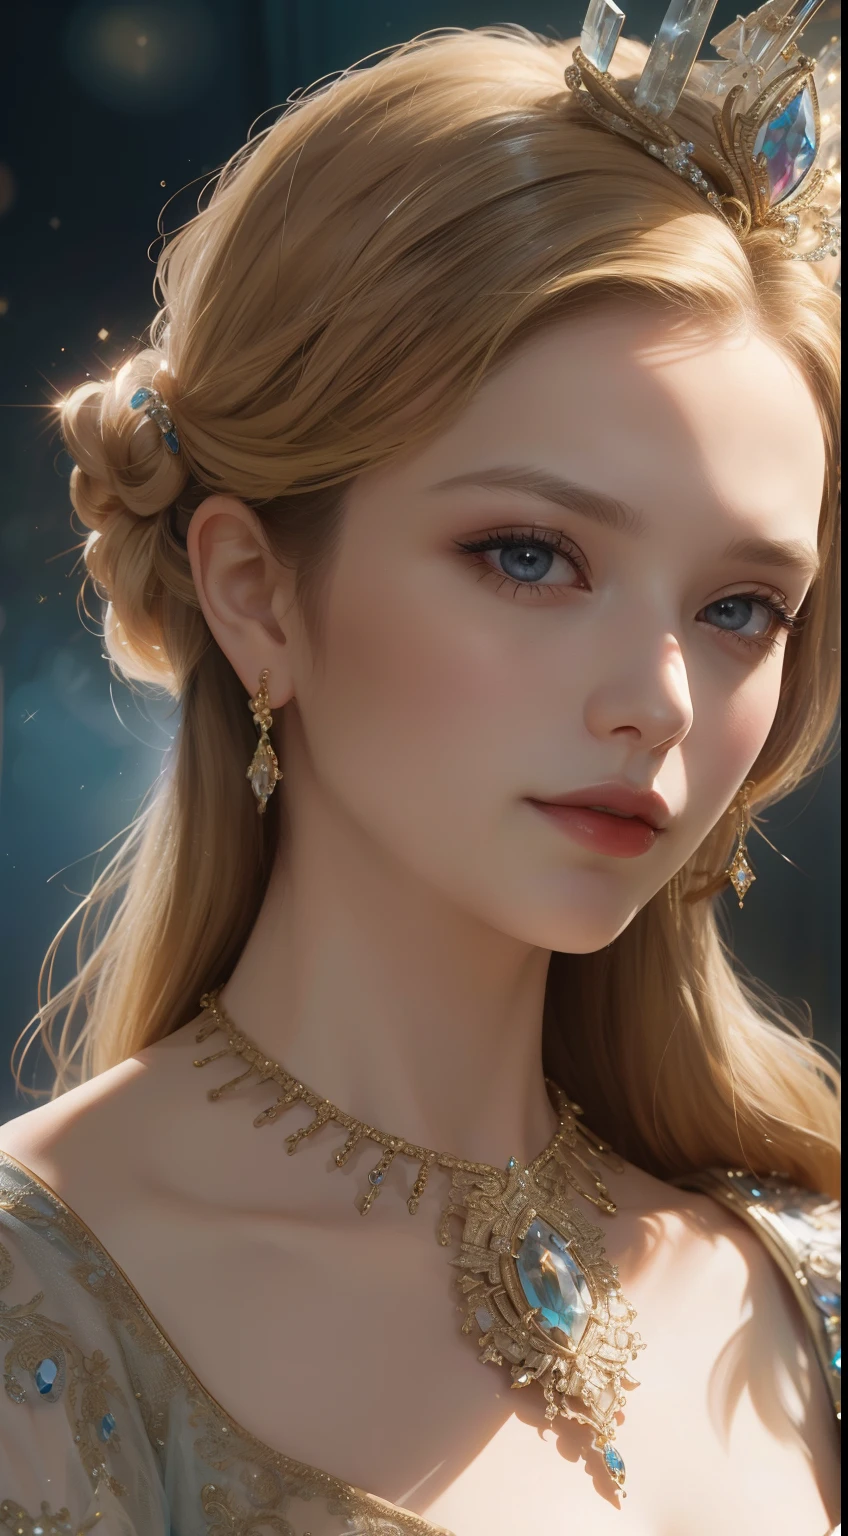 杰作，最高图像质量，一位皇家贵妇的美丽半身像，精致的金发发型，饰有令人眼花缭乱的精美珠宝，超级细节，升级版。